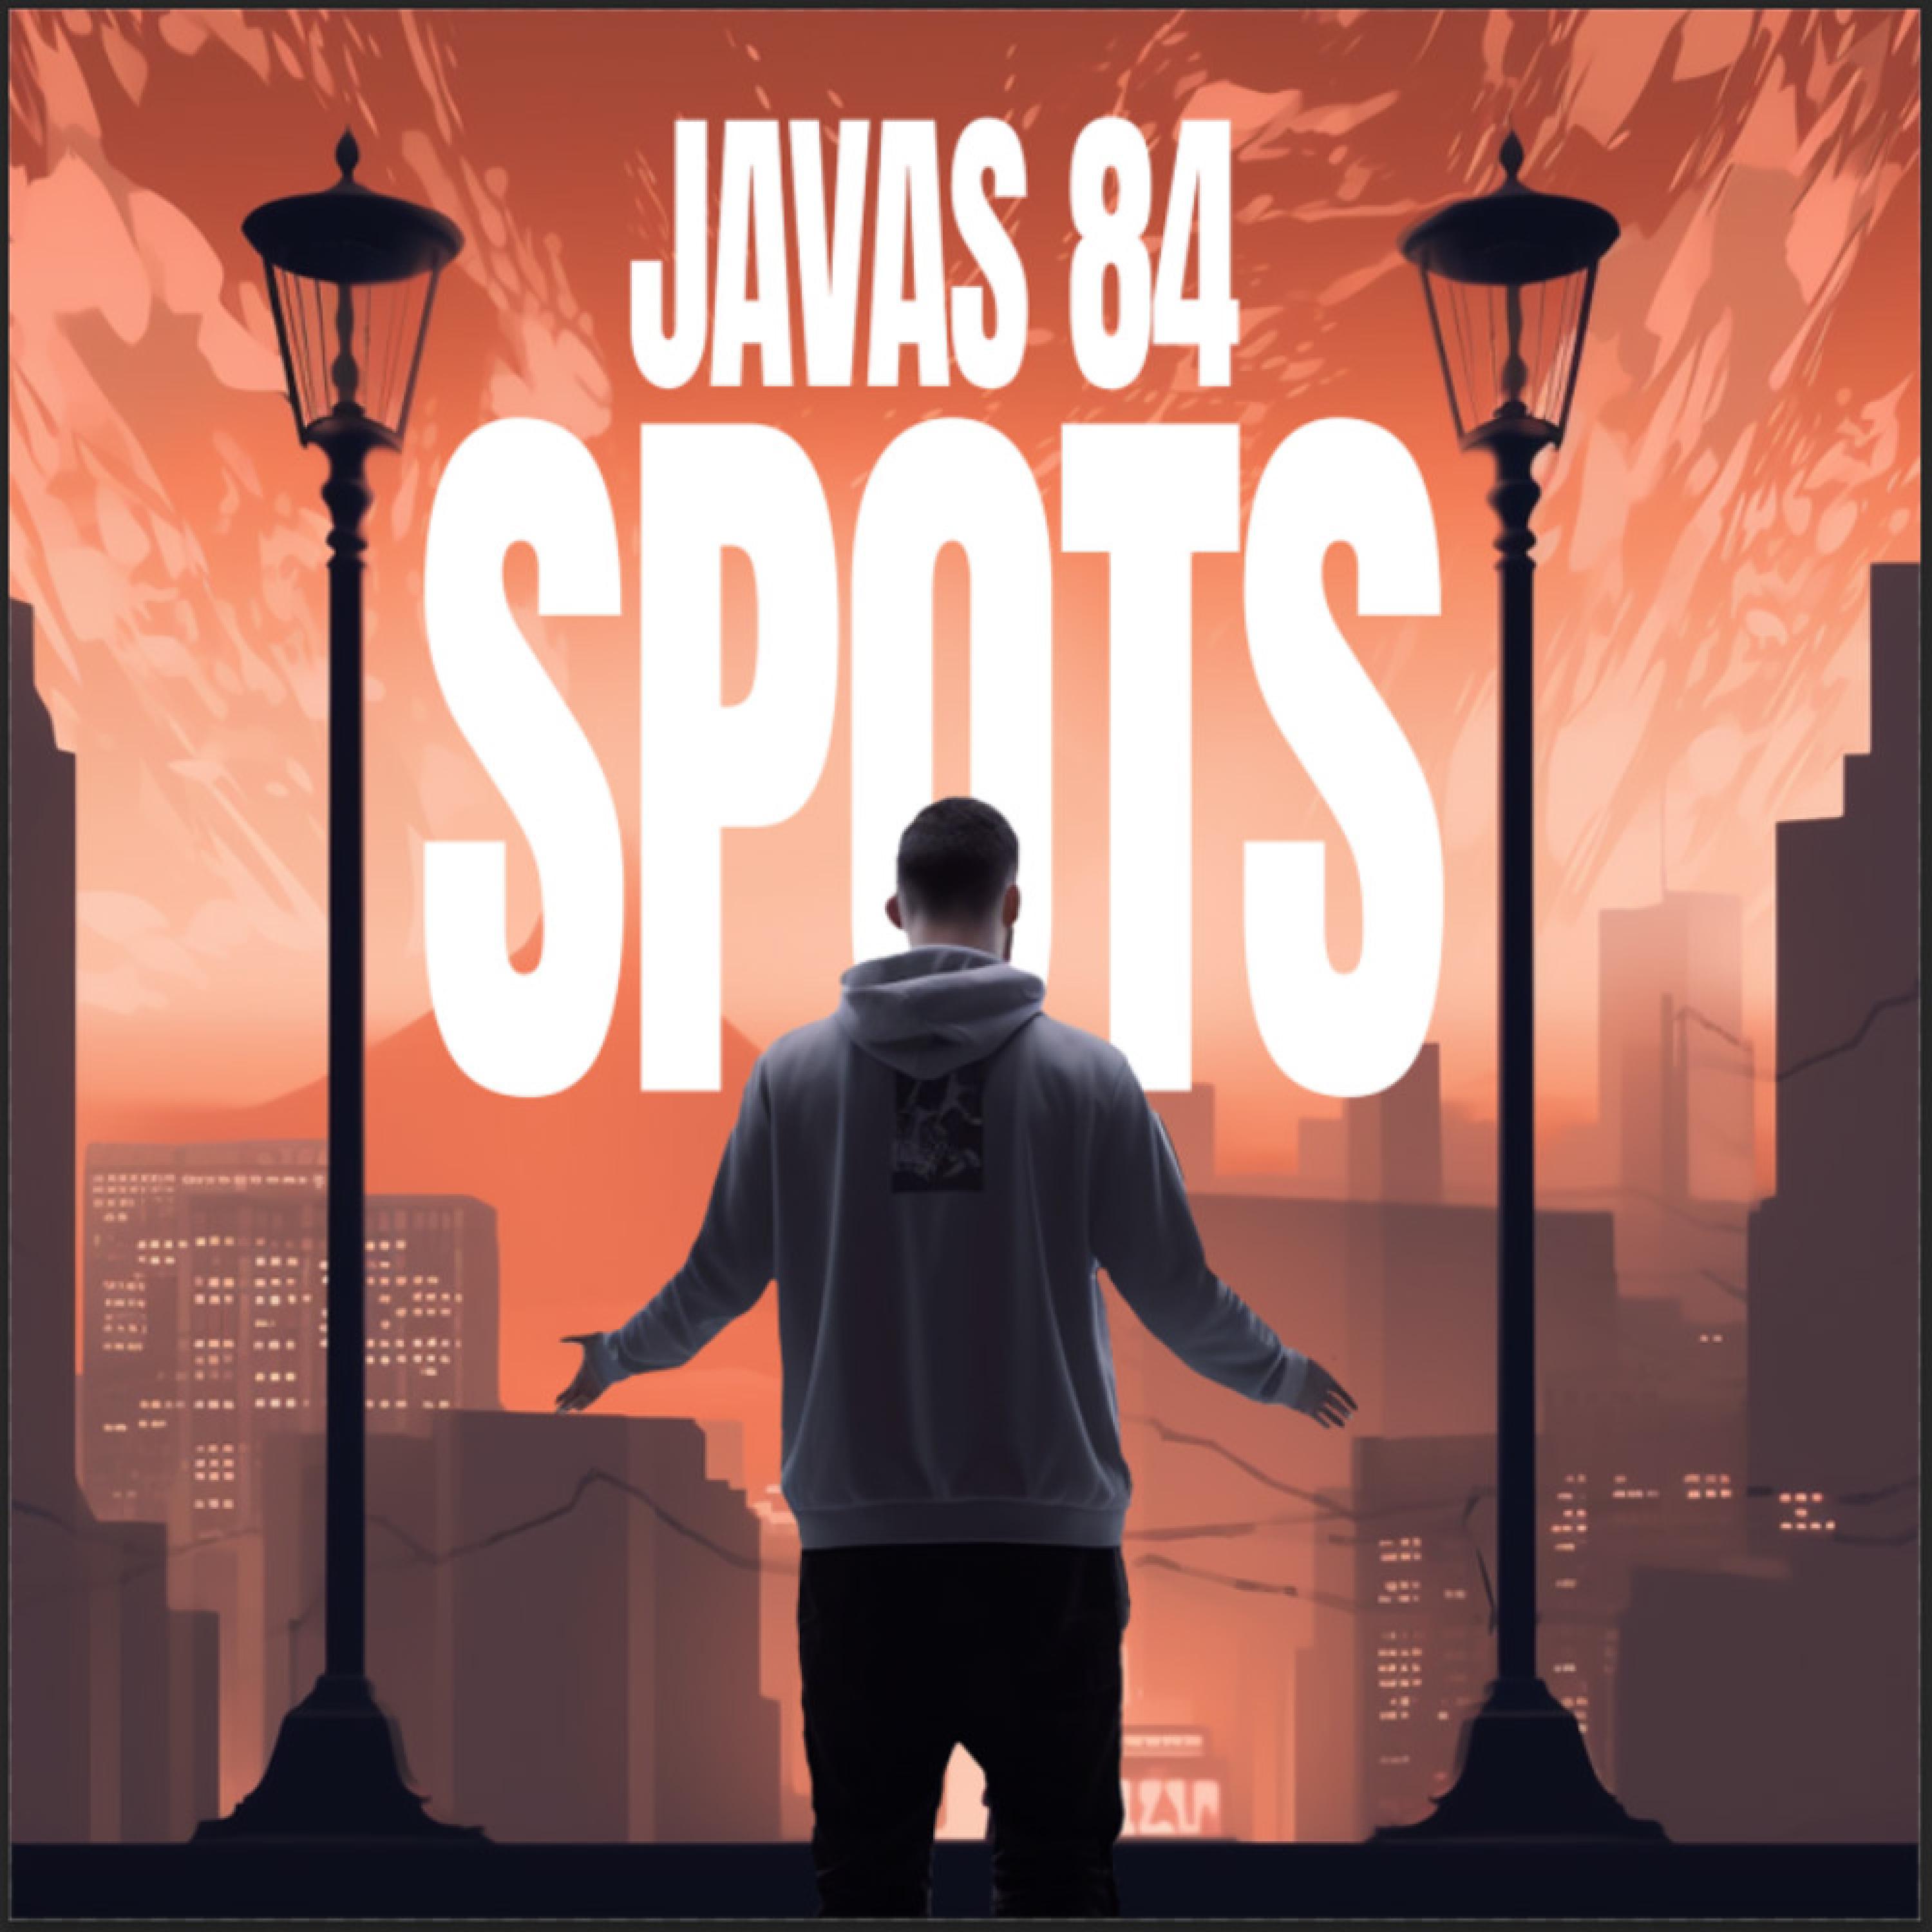 Javas84 - Spots